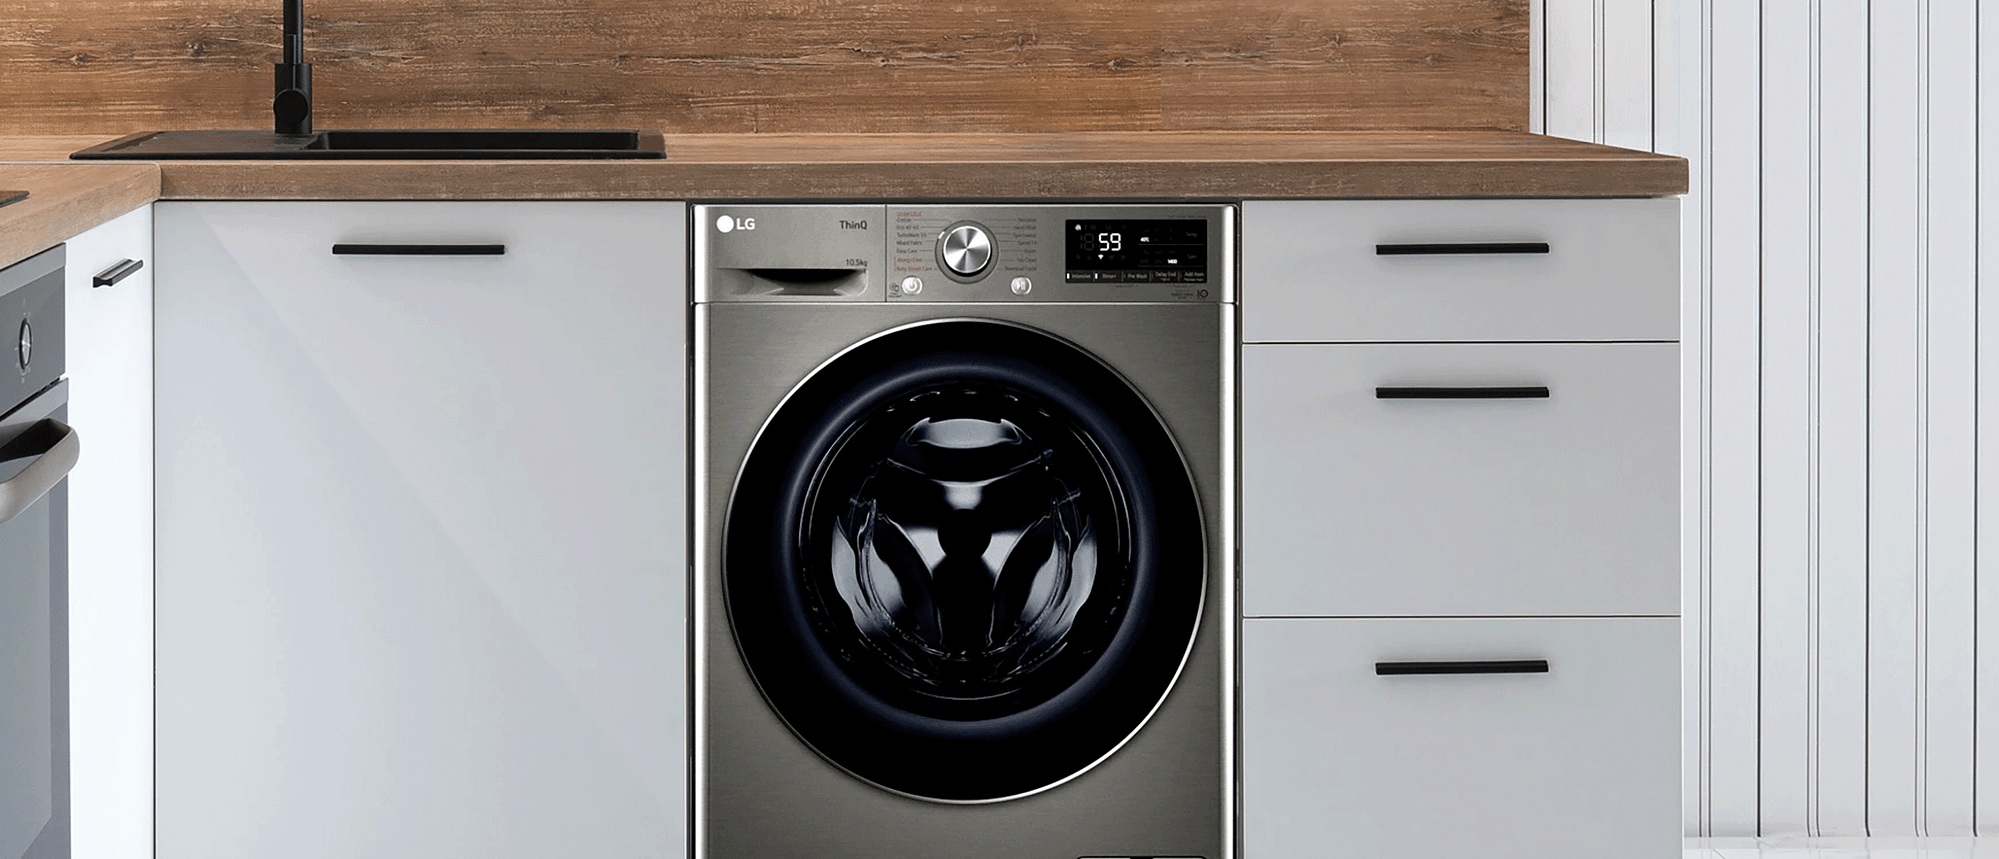 LG dark grey washing machine in a kitchen